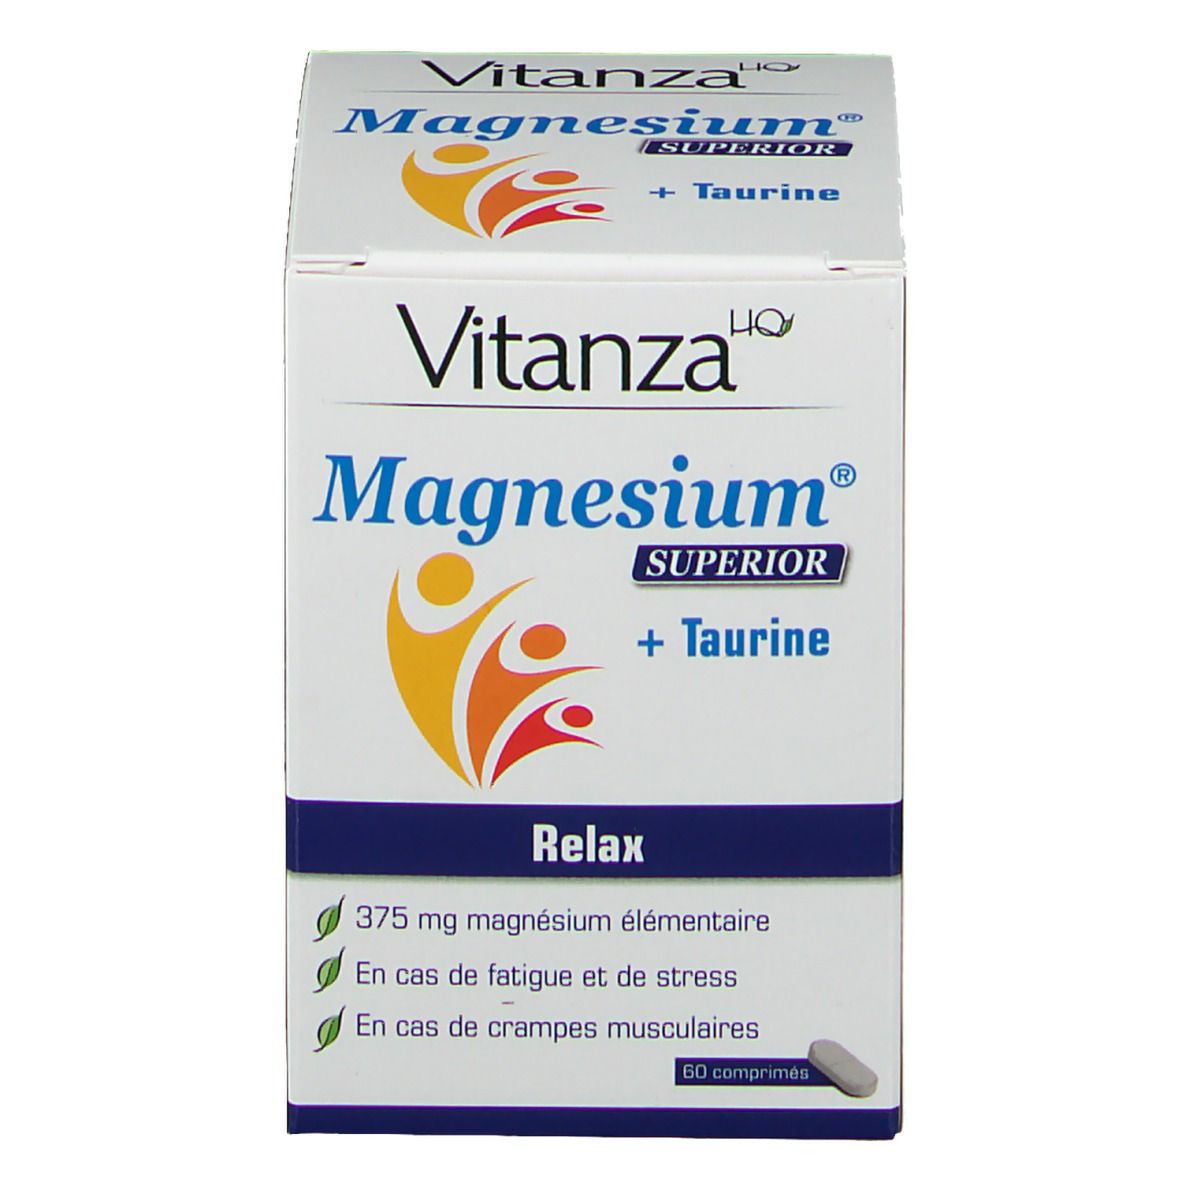 Vitanza HQ Magnesium Superior